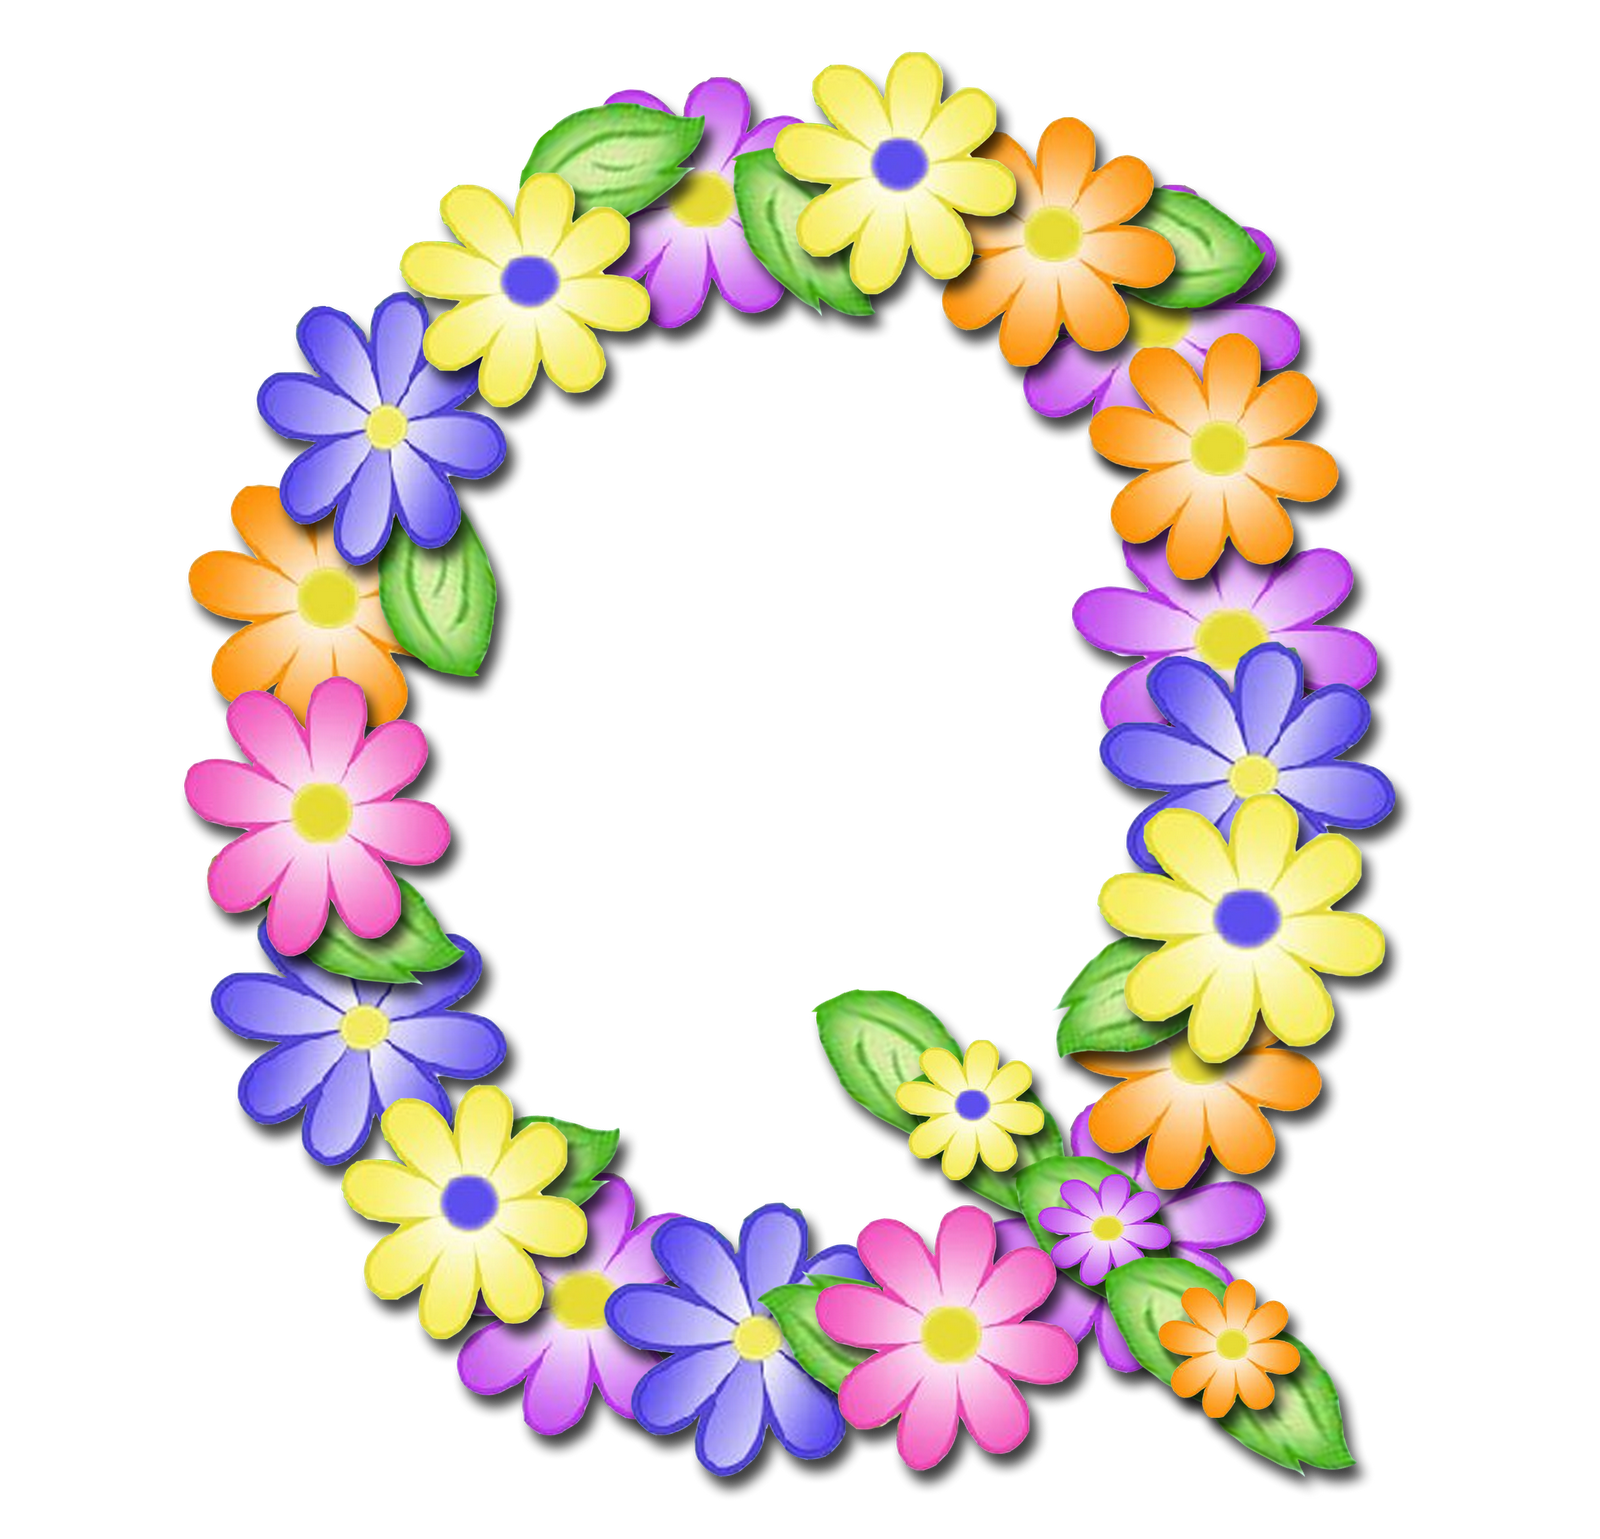 صور الحروف الإنجليزية بأجمل الزهور والورود بخلفية شفافة بنج png وجودة عالية للمصممين :: إبحث عن حروف إسمك بالإنجليزية - صفحة 2 P_1699y7k9m1